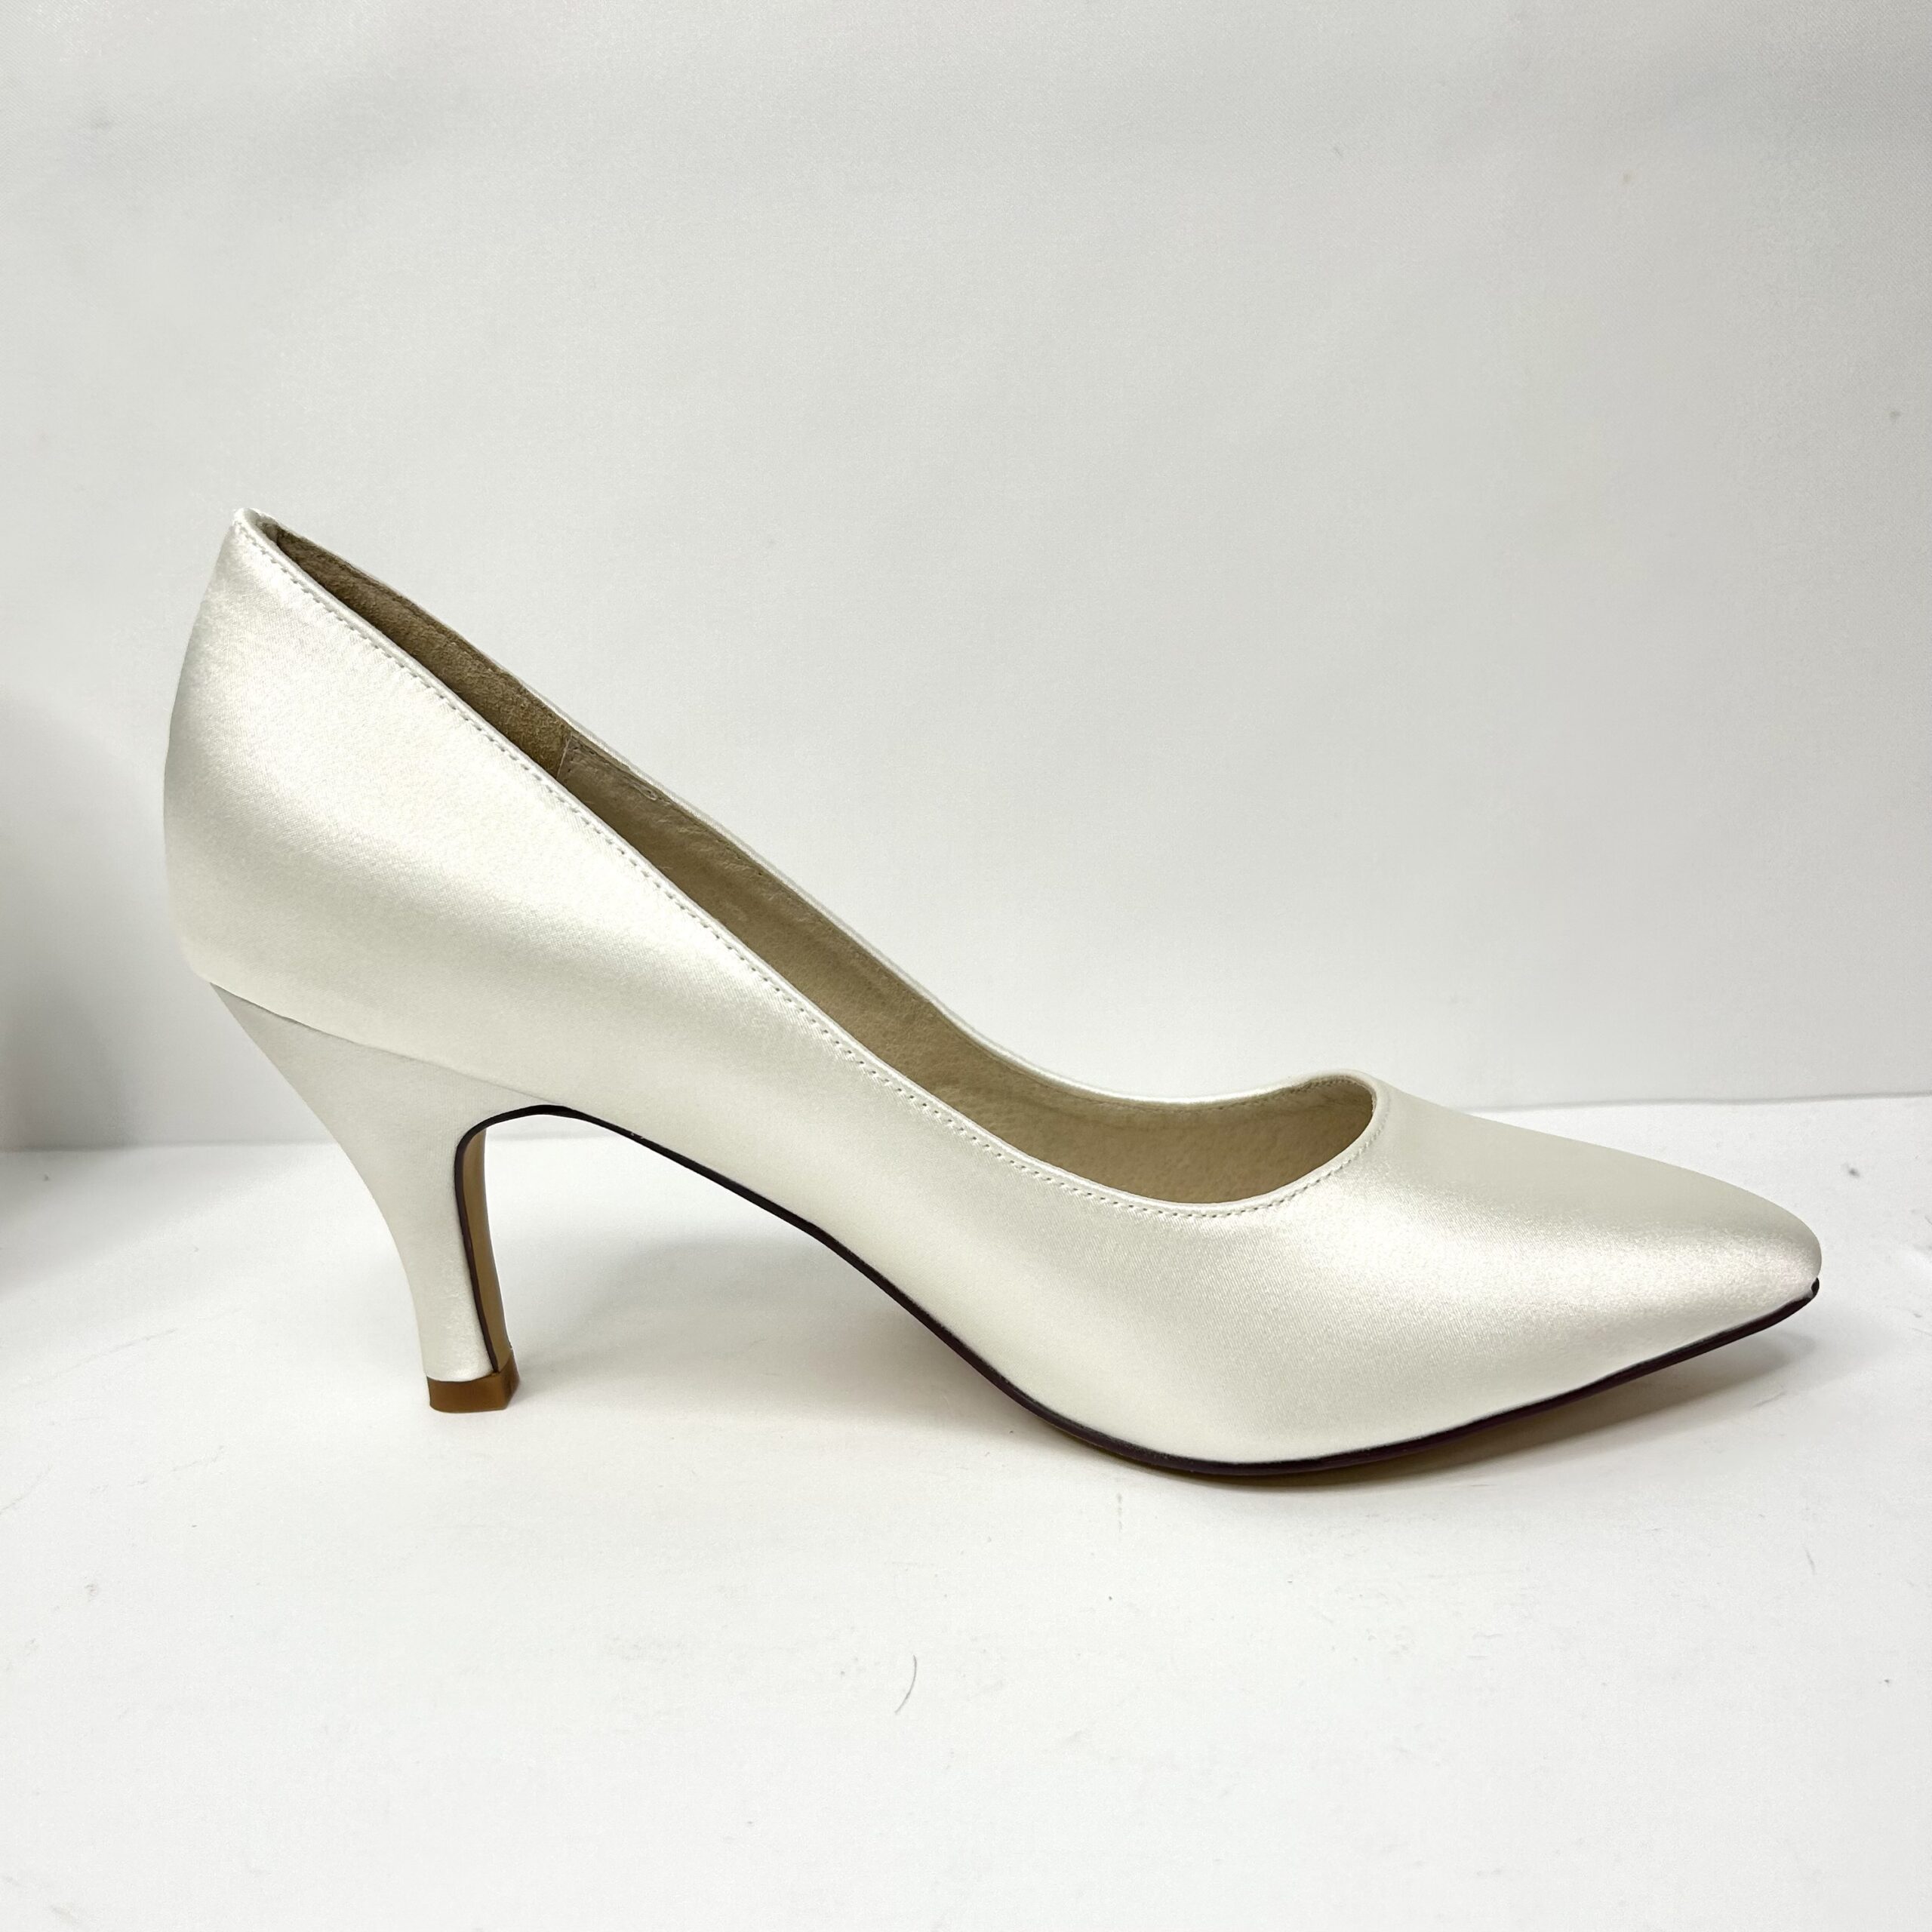 Carmel - 8cm heel | Jeanette Maree